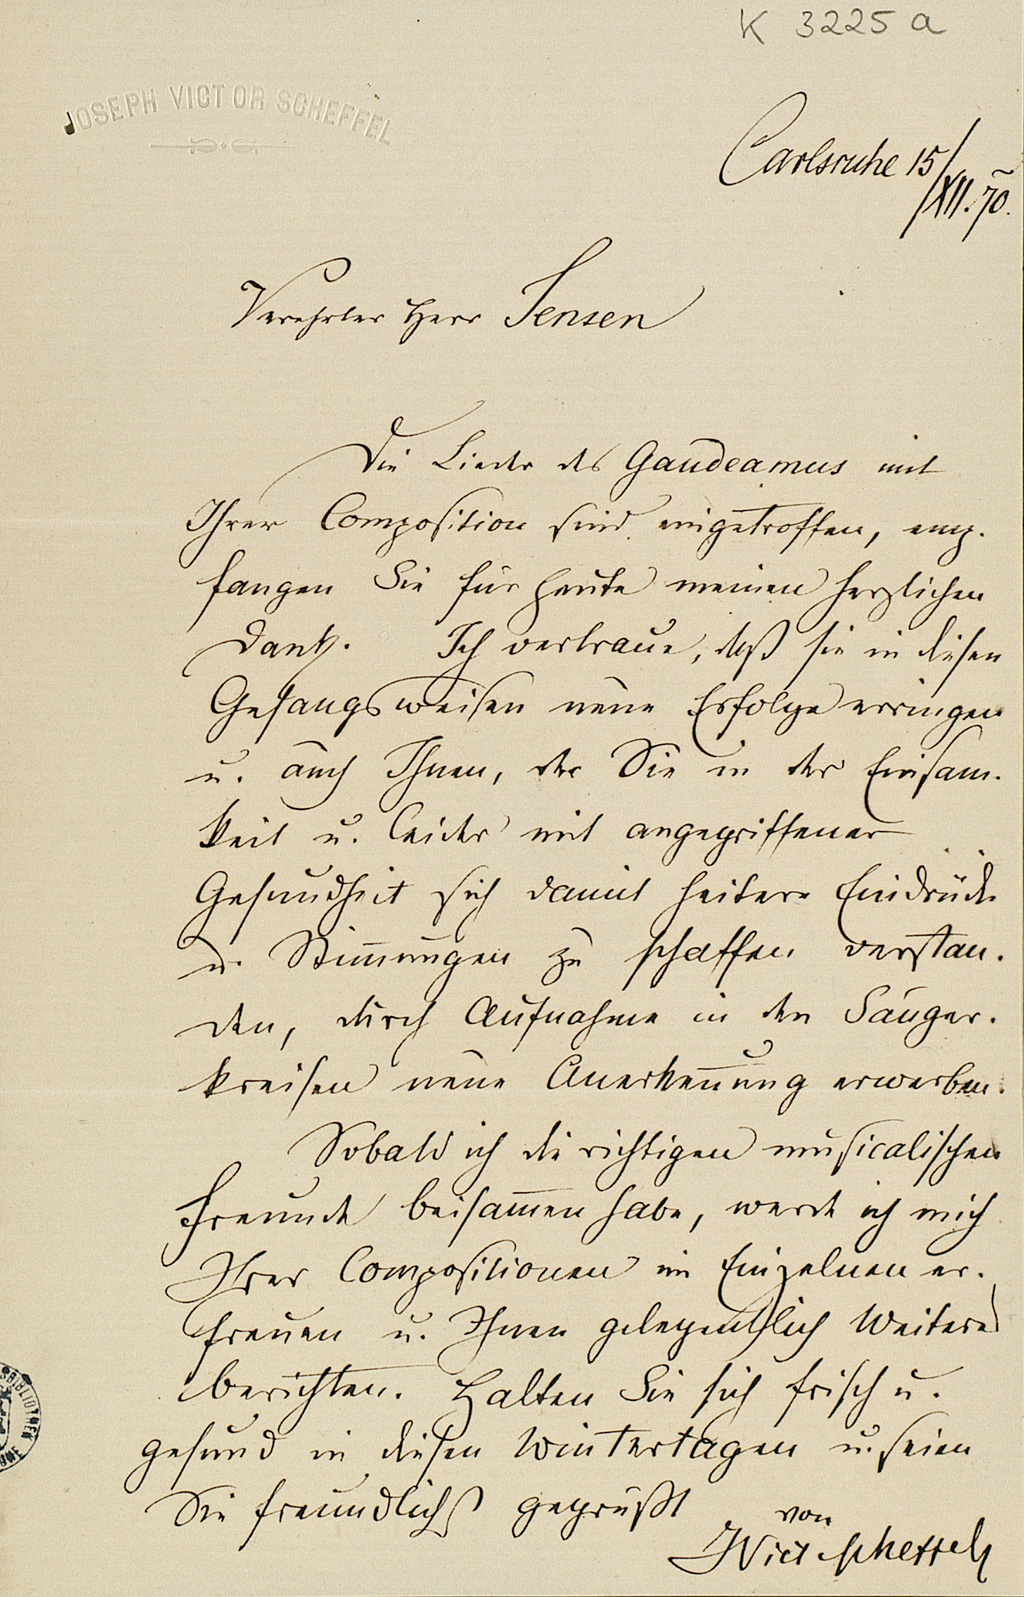 Zu sehen ist ein Brief von Joseph Victor von Scheffel an einen Herrn Jensen, geschrieben in Karlsruhe am 15. Dezember 1870.